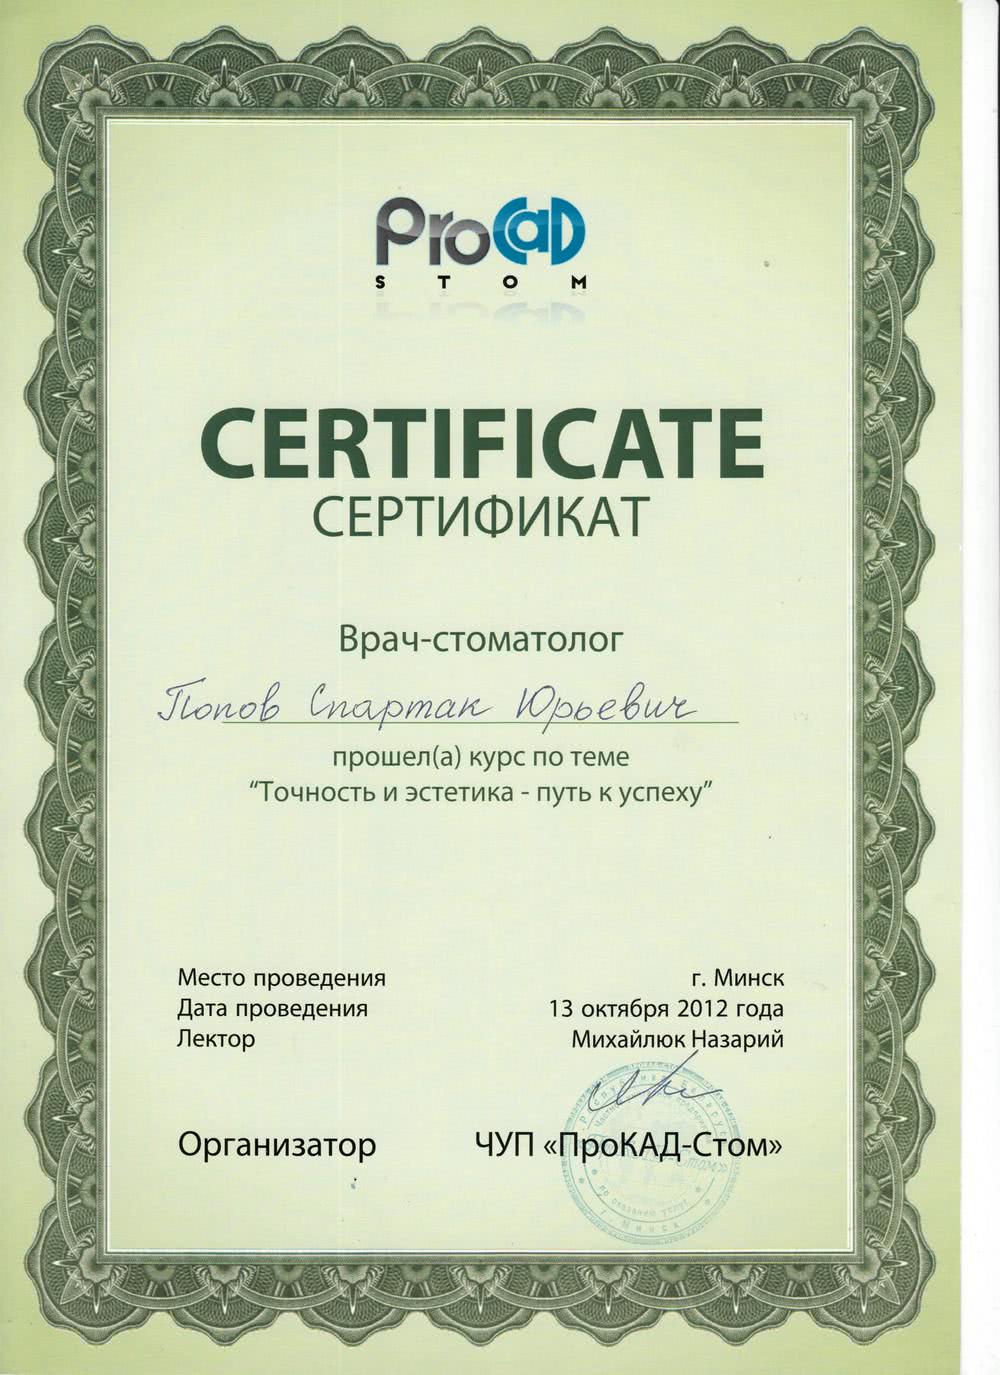 Сертификат Попов Спартак Юрьевич